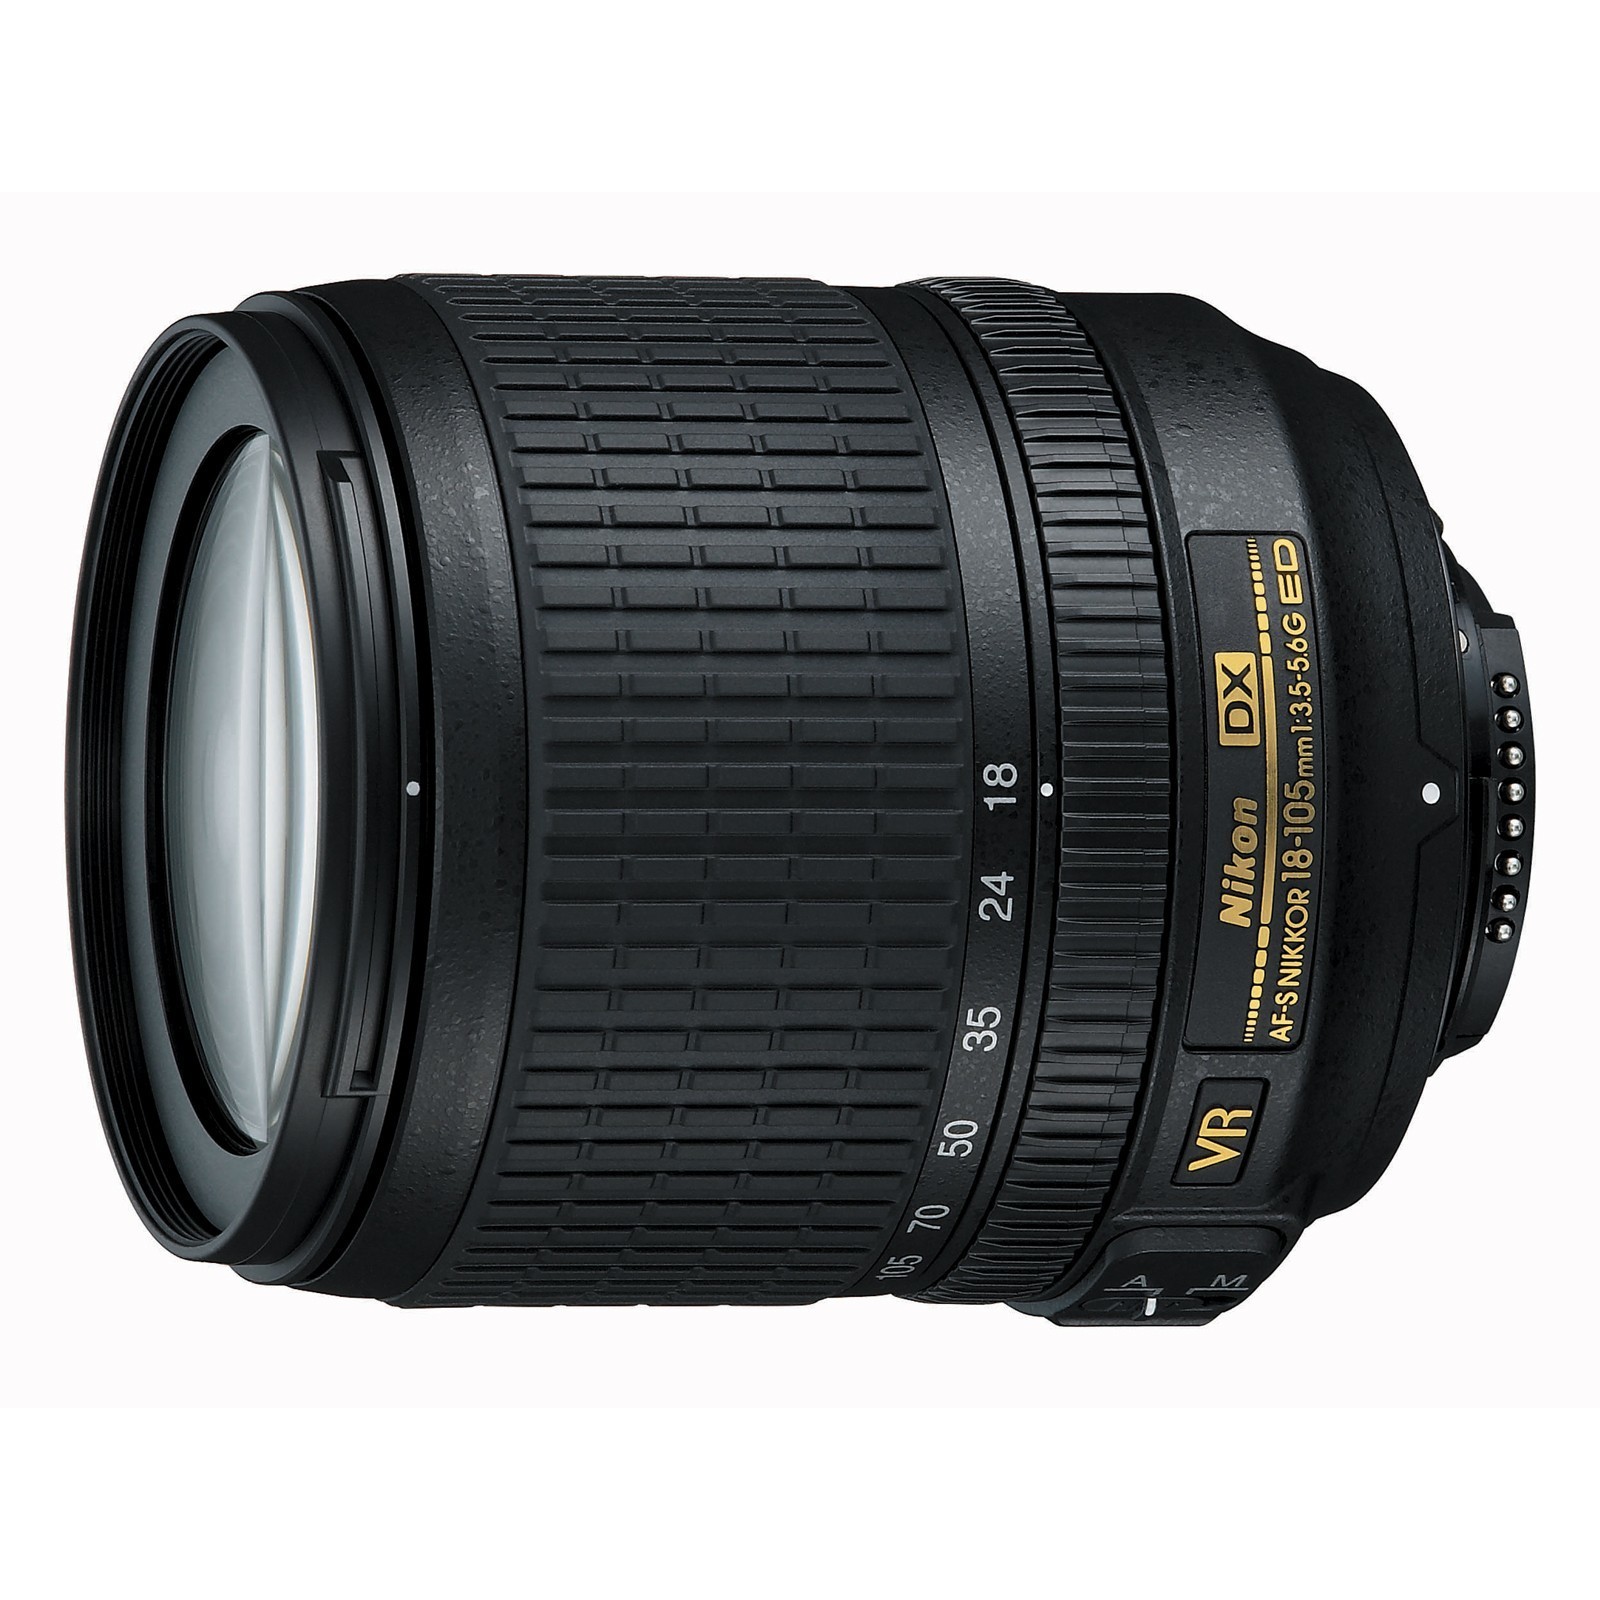 Nikon 18-105mm f/3.5-5.6G ED VR AF-S DX Nikkor